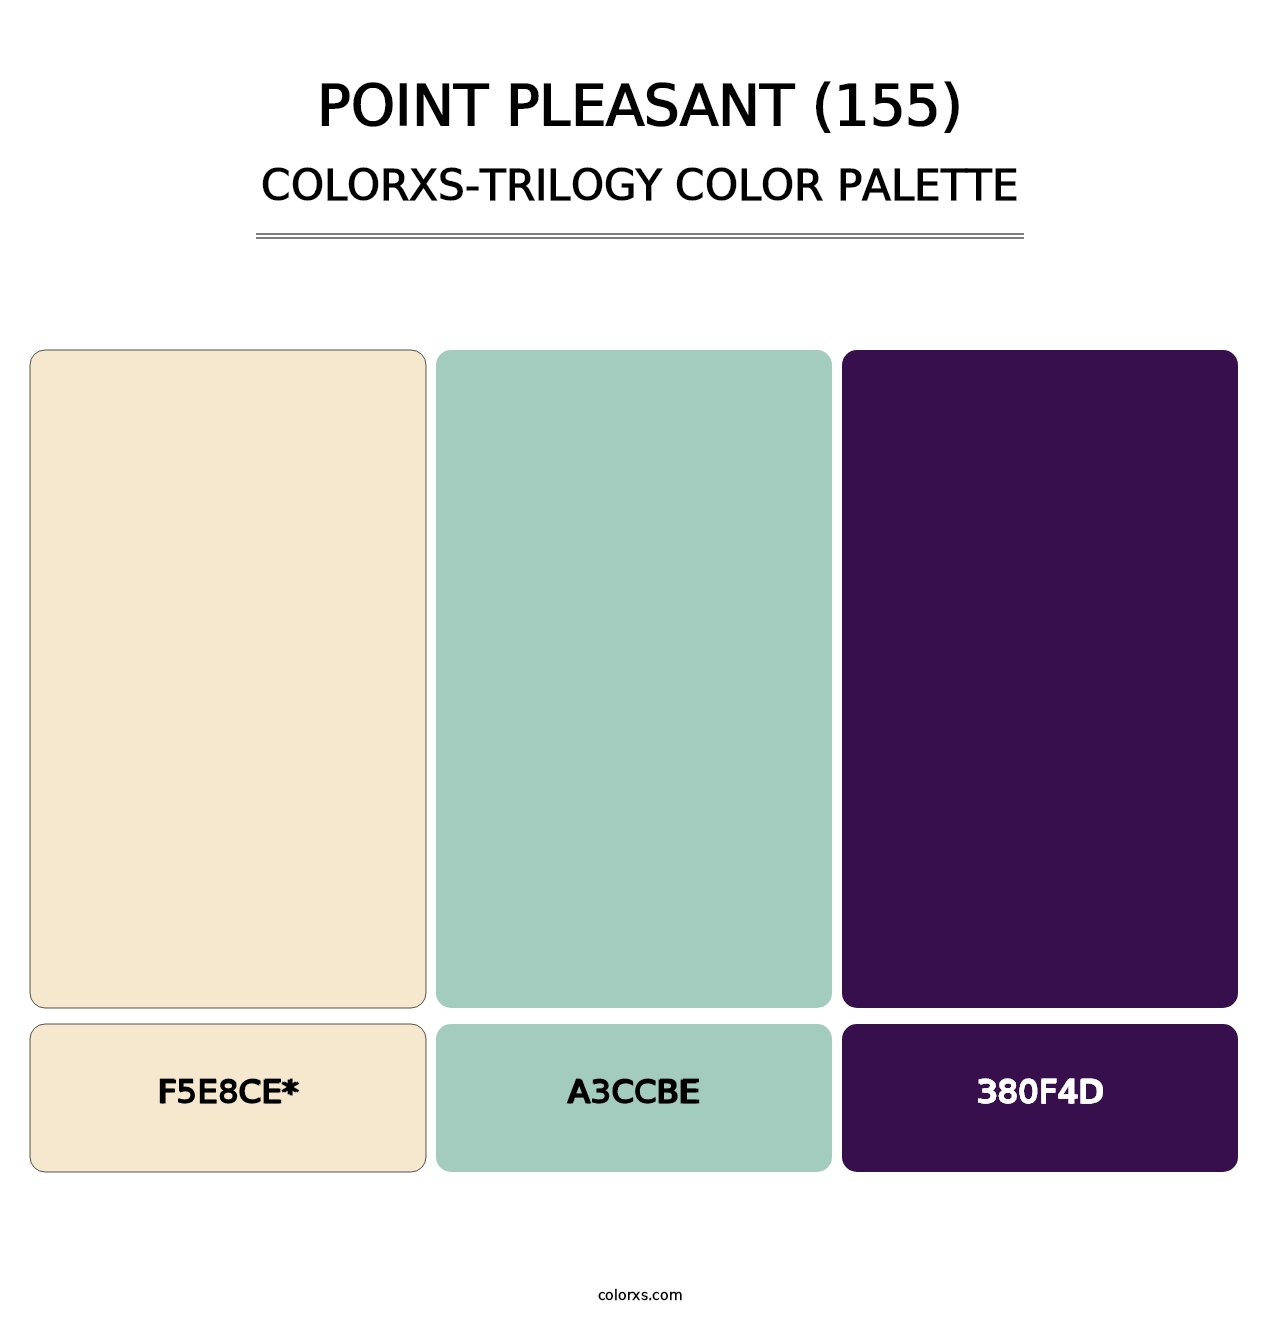 Point Pleasant (155) - Colorxs Trilogy Palette